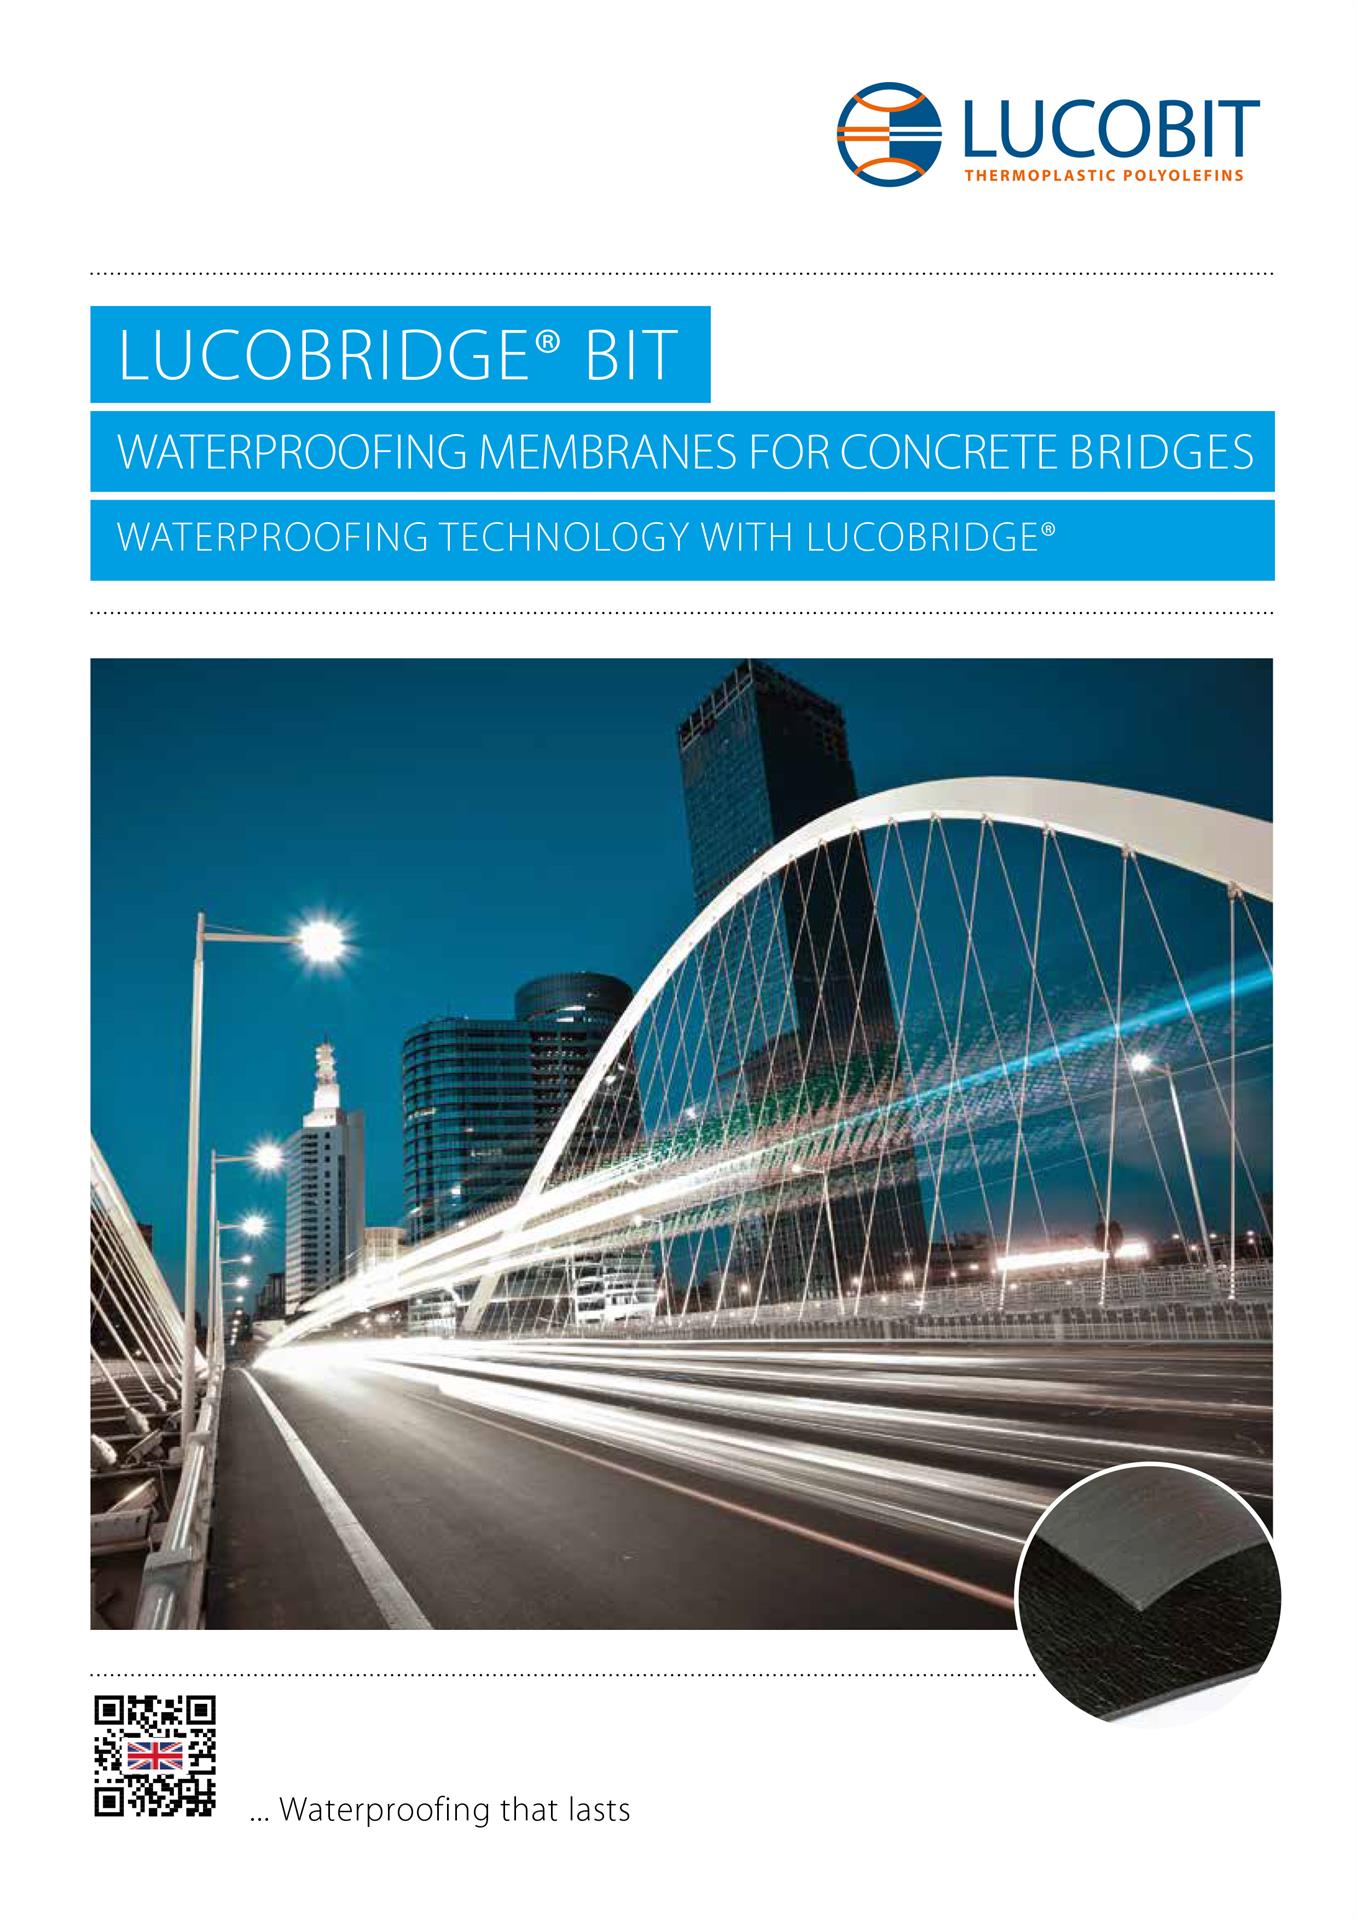 LUCOBIT Brochure - WATERPROOFING MEMBRANES FOR CONCRETE BRIDGES